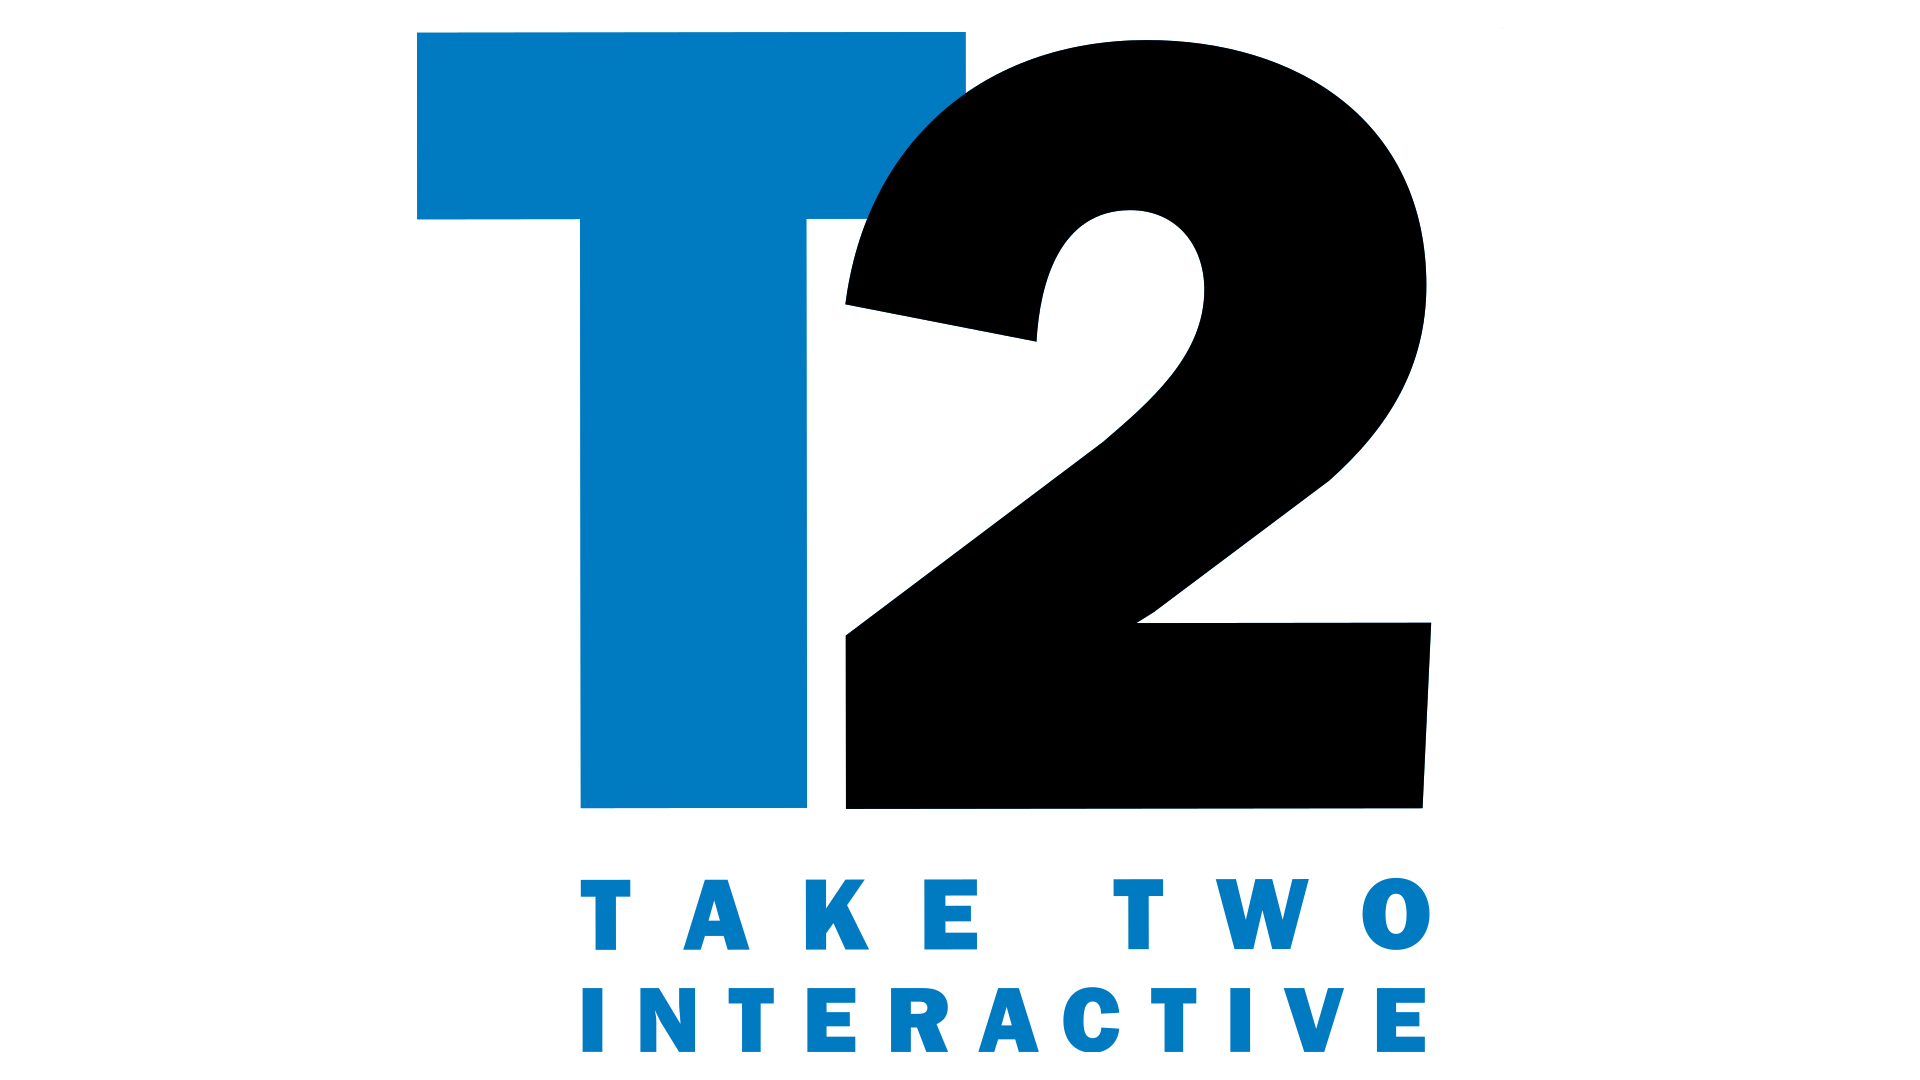 หัวหน้า Take-Two: “เราจะไม่ทนต่อพฤติกรรมแย่ ๆ ใด ๆ ”